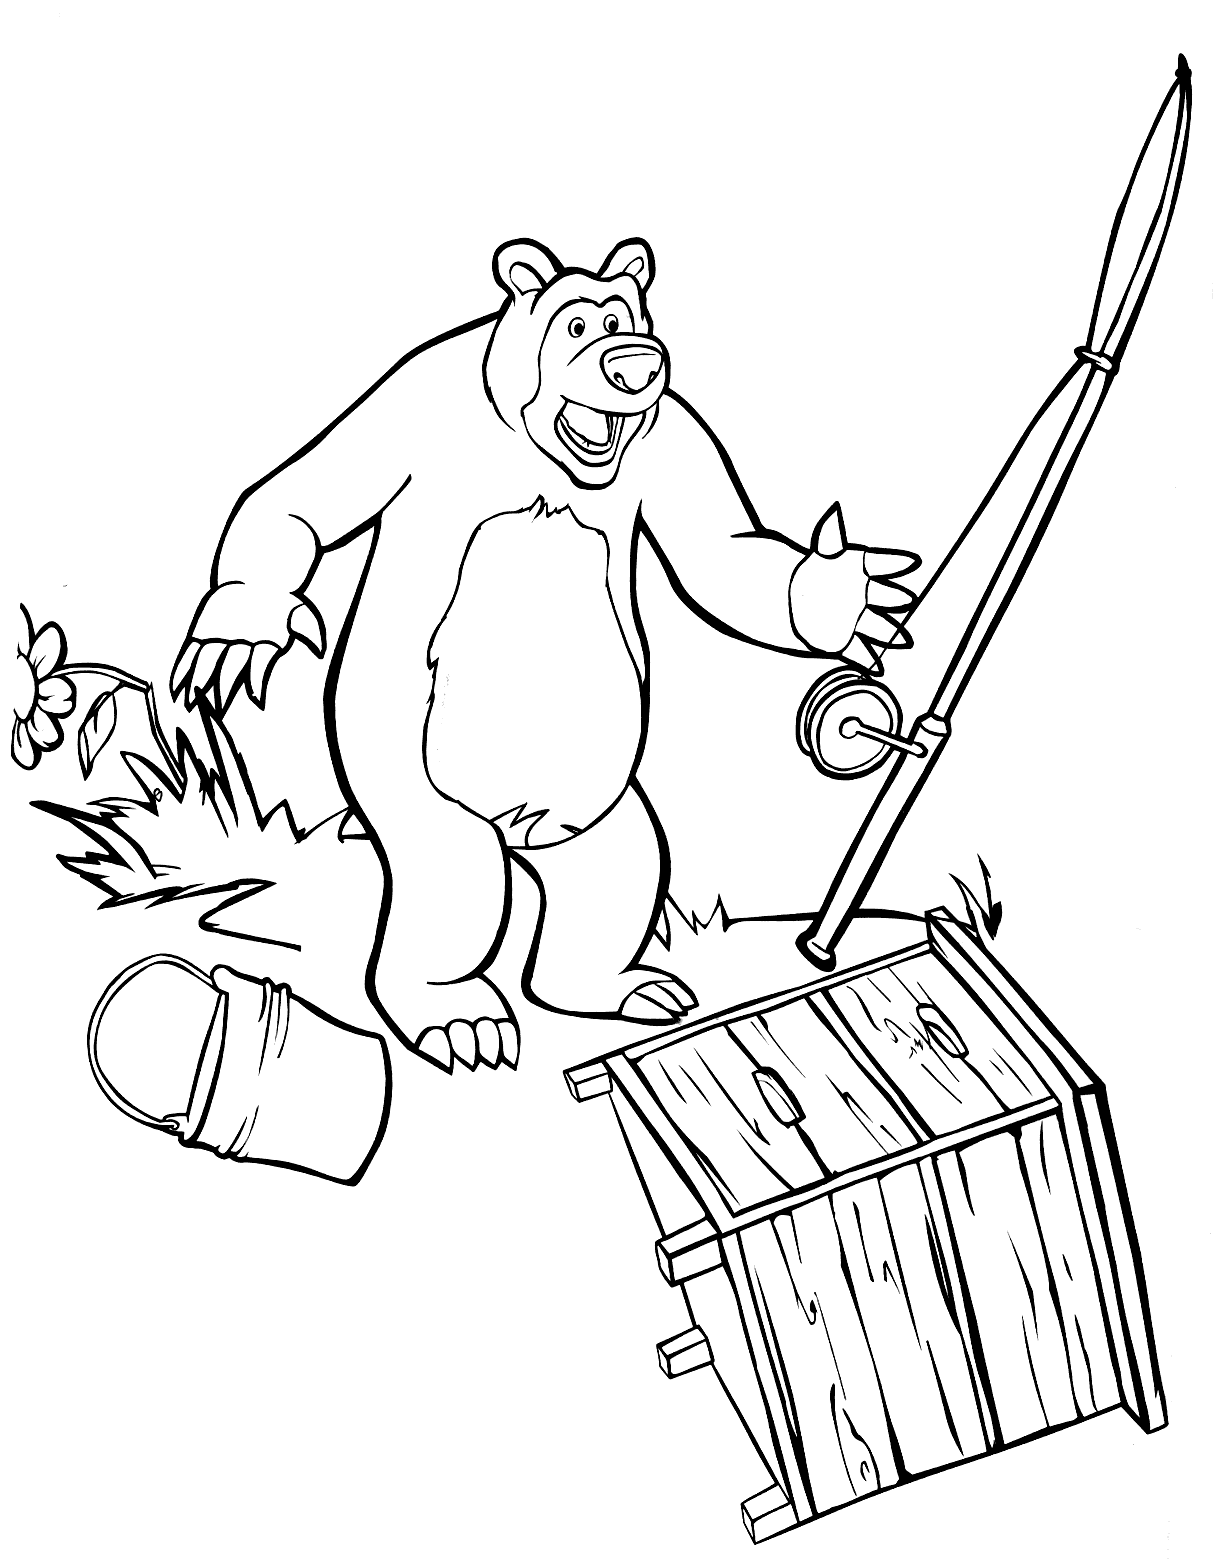 Masha e Orso - Orso allarmato lancia la canna da pesca ed il secchio dei pesci